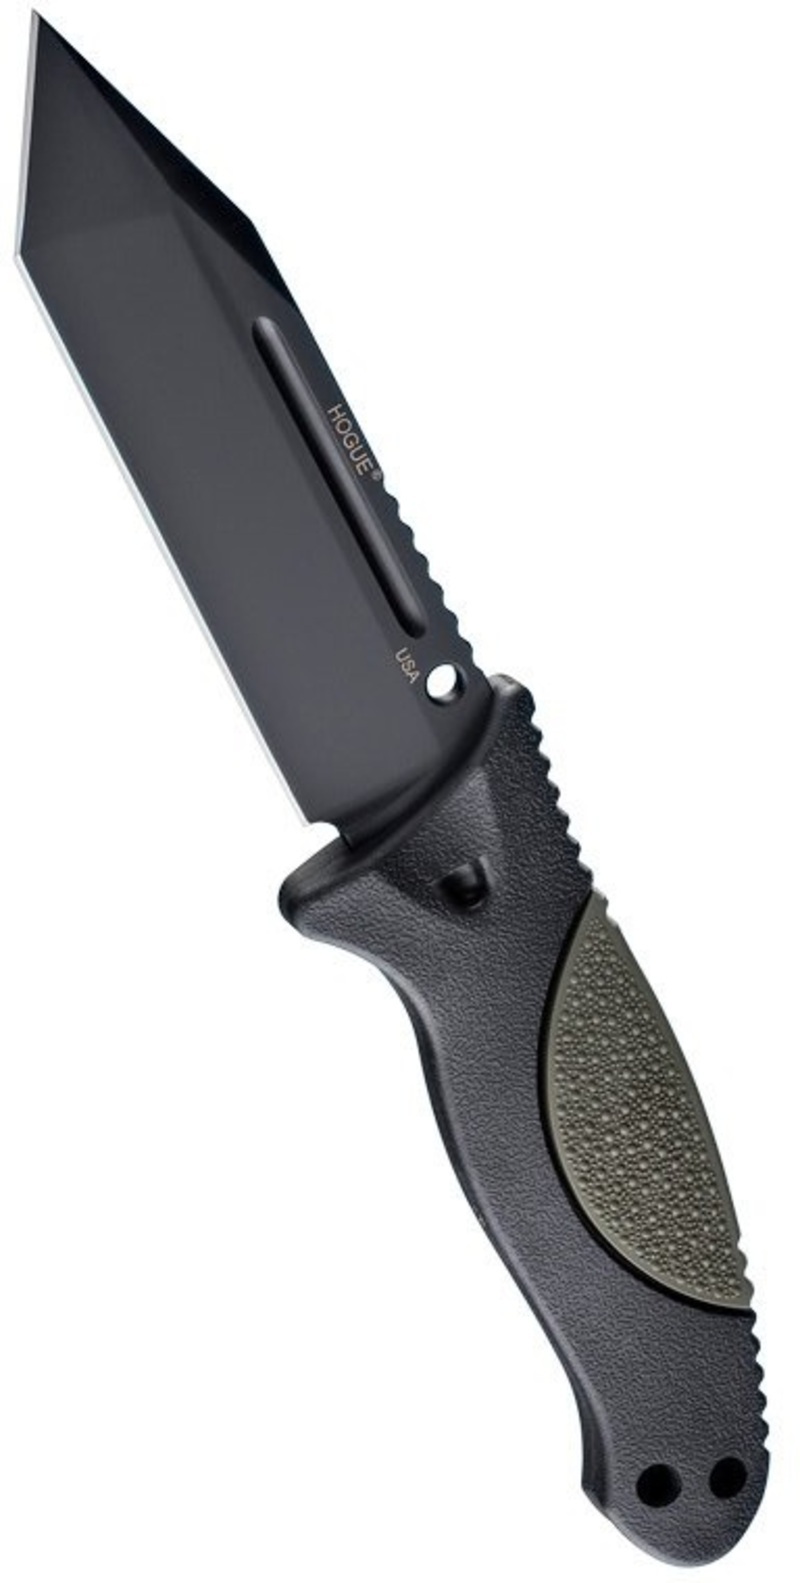 Нож с фиксированным клинком EX-F02 Black Tanto Blade, OD Green Handle 11.4 см. складной нож ontario joe pardue utilitac ii   tanto blade highly textured handle